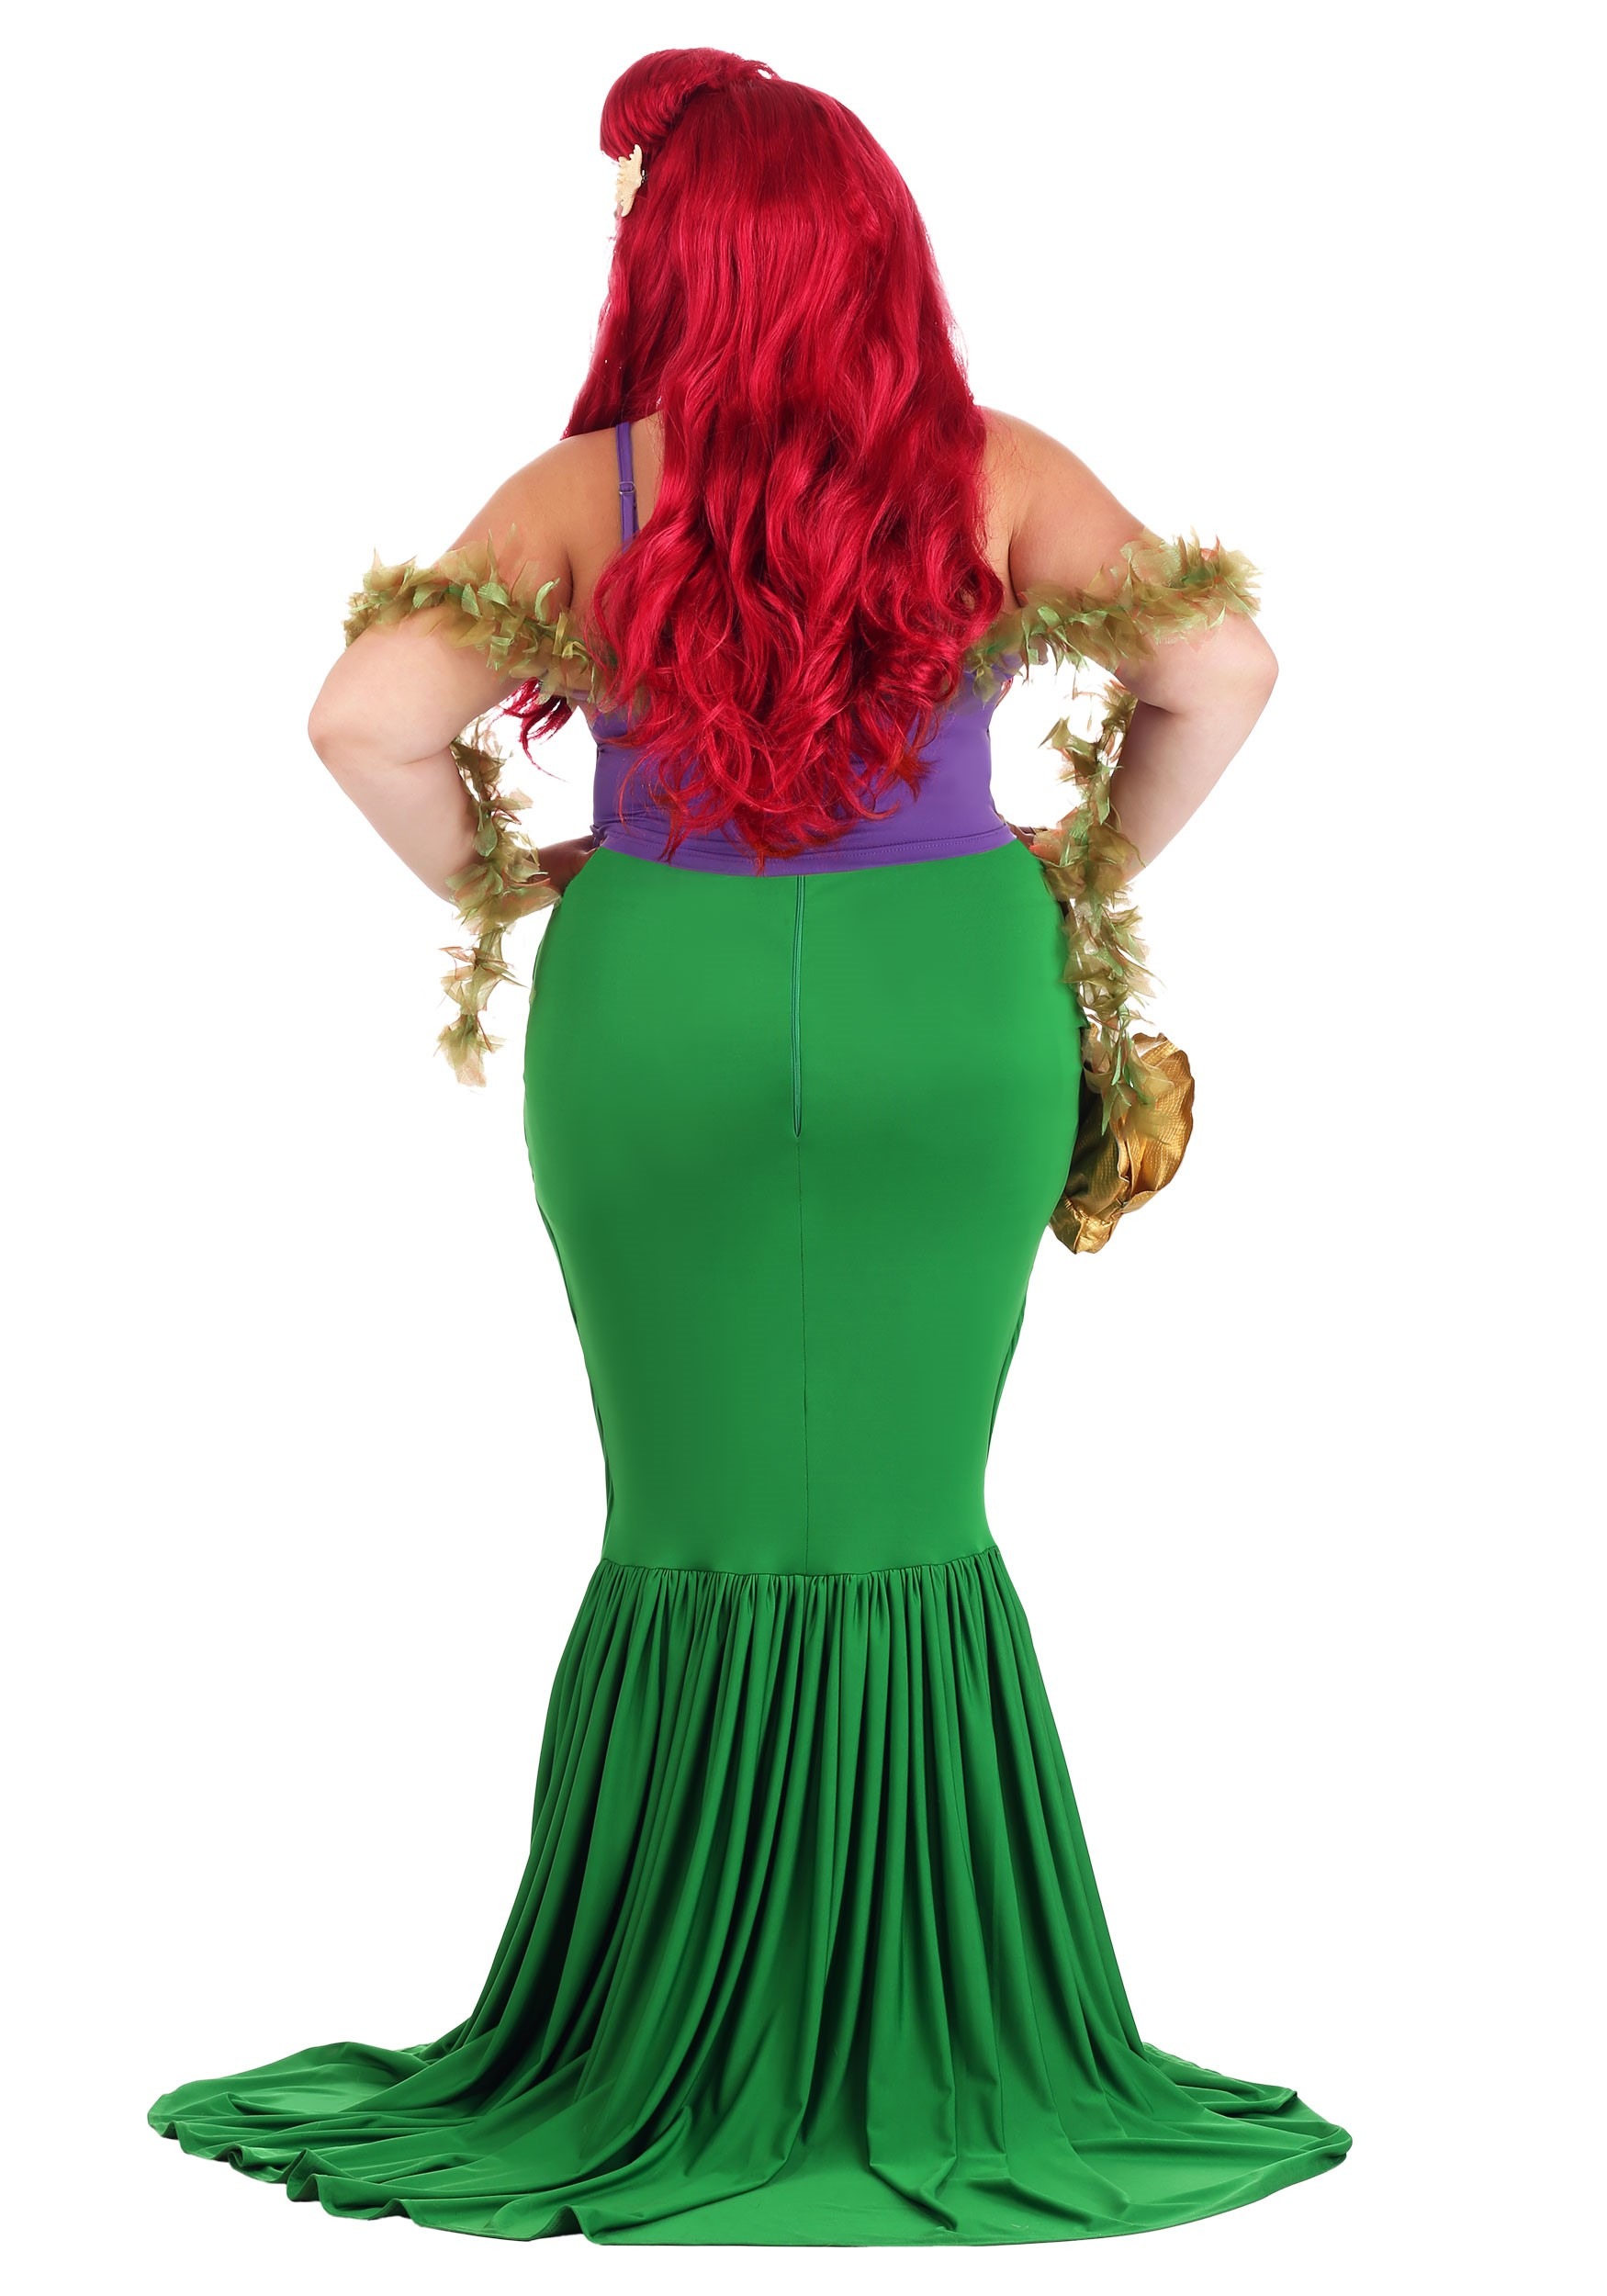 Undersea Mermaid Fancy Dress Costume For Plus Size Women